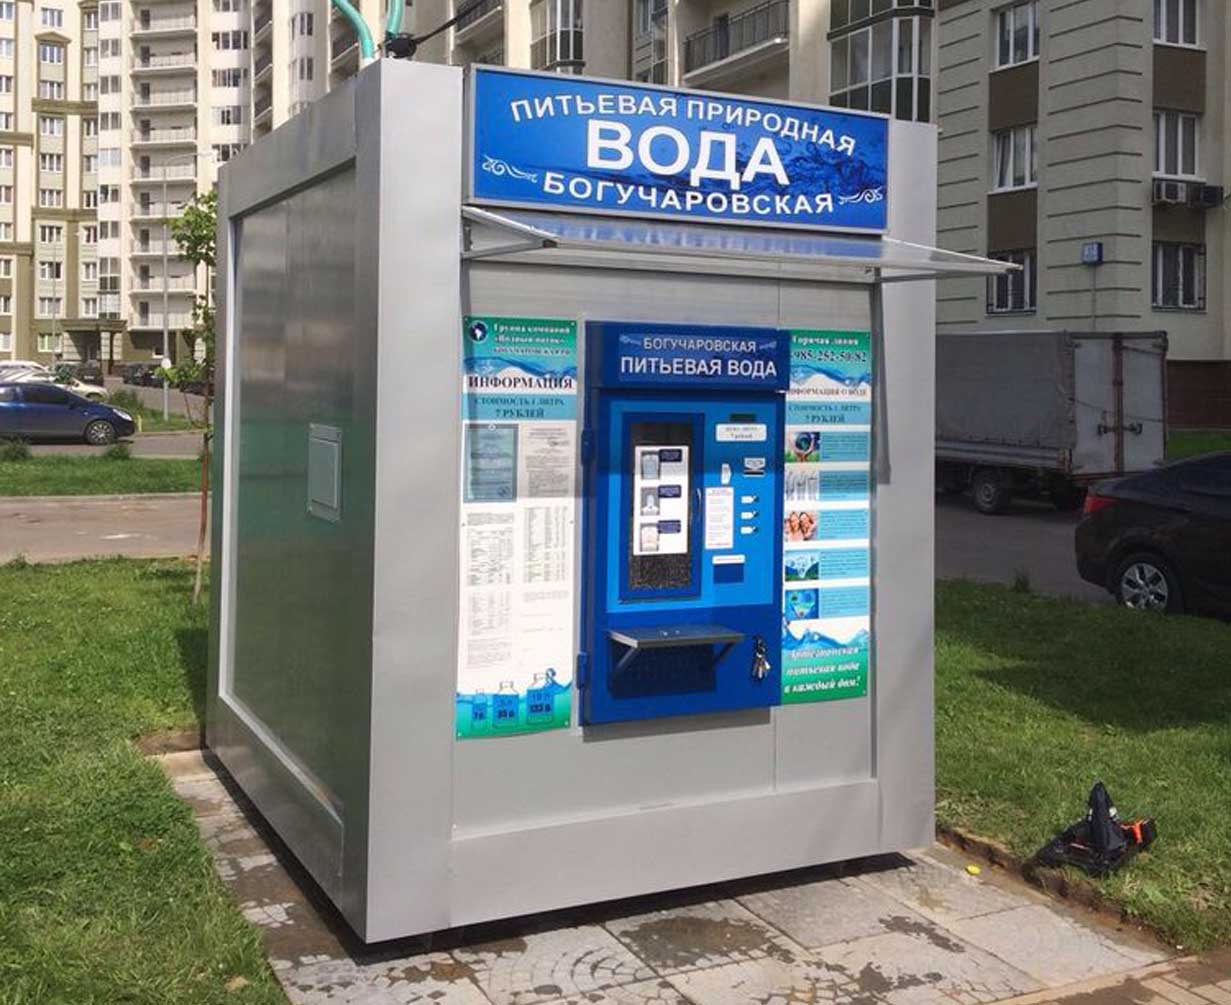 Аппарат продажи воды на улице. Киоск с водой. Автомат для розлива воды. Уличный автомат с водой. Автомат для питьеаой водыводы.